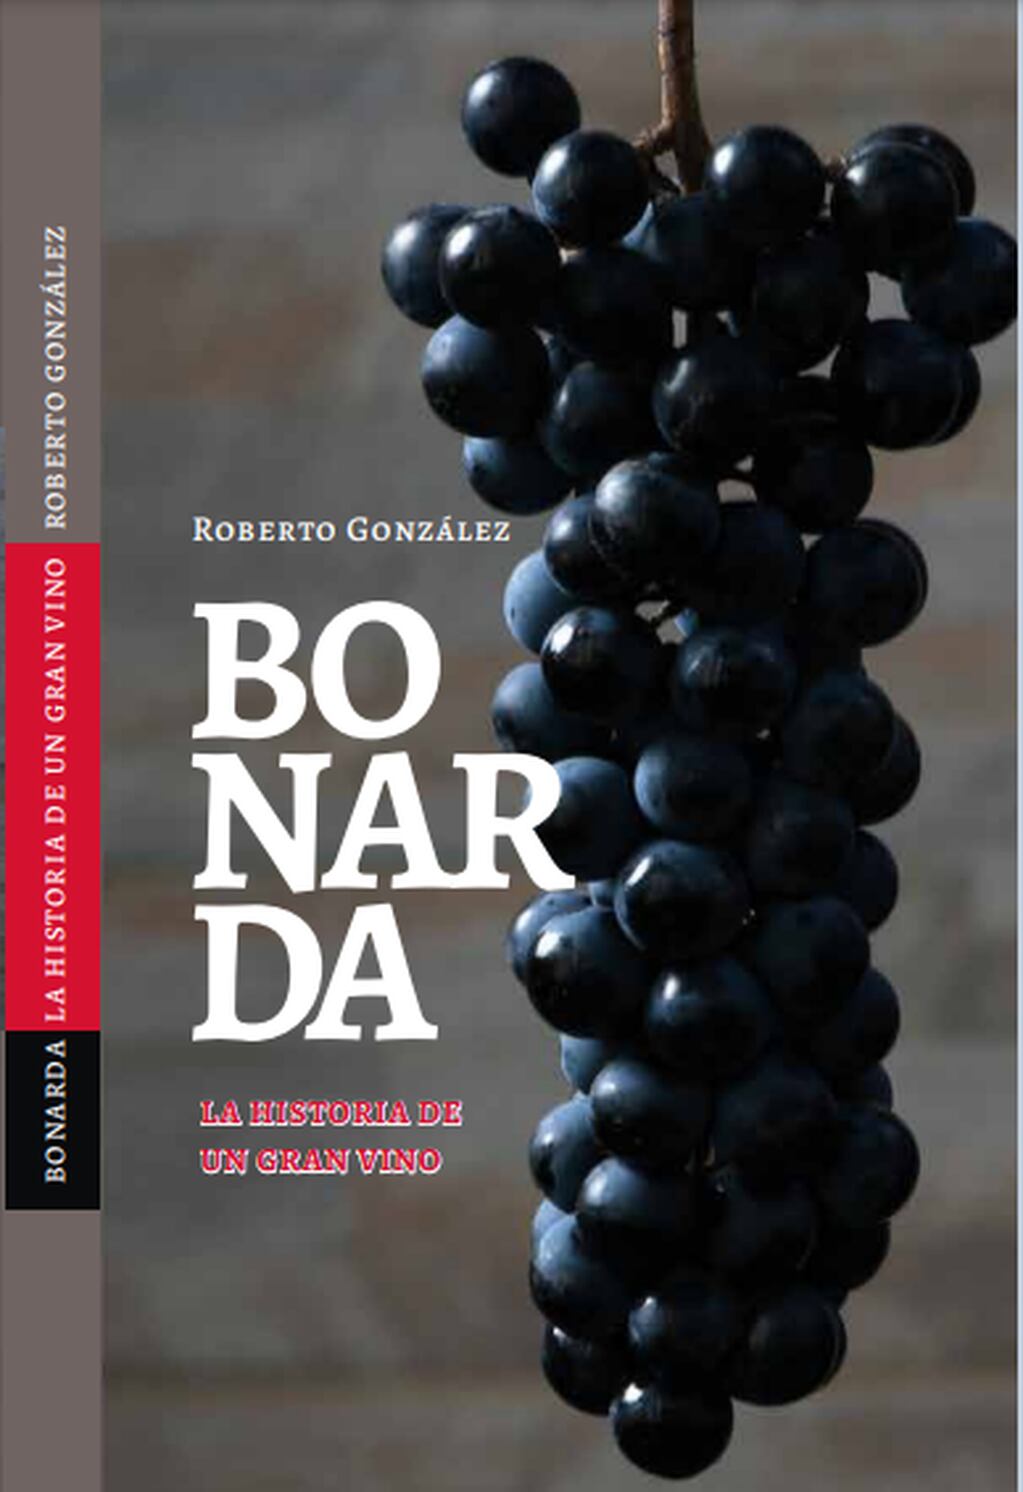 "Bonarda, historia de un gran vino", el libro de Roberto González. - Gentileza